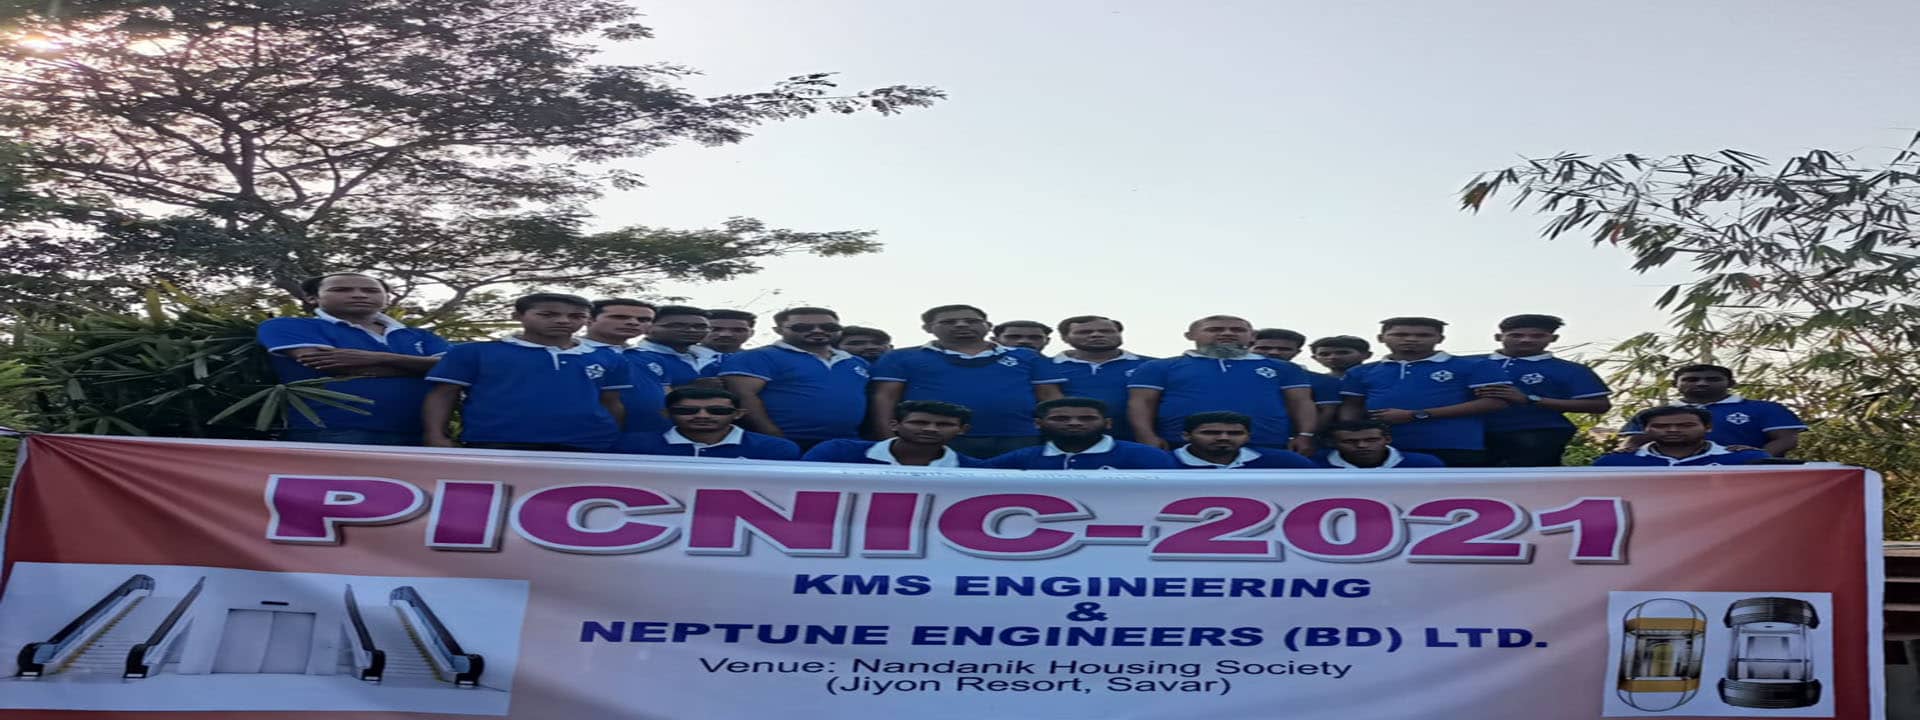 kms engineering